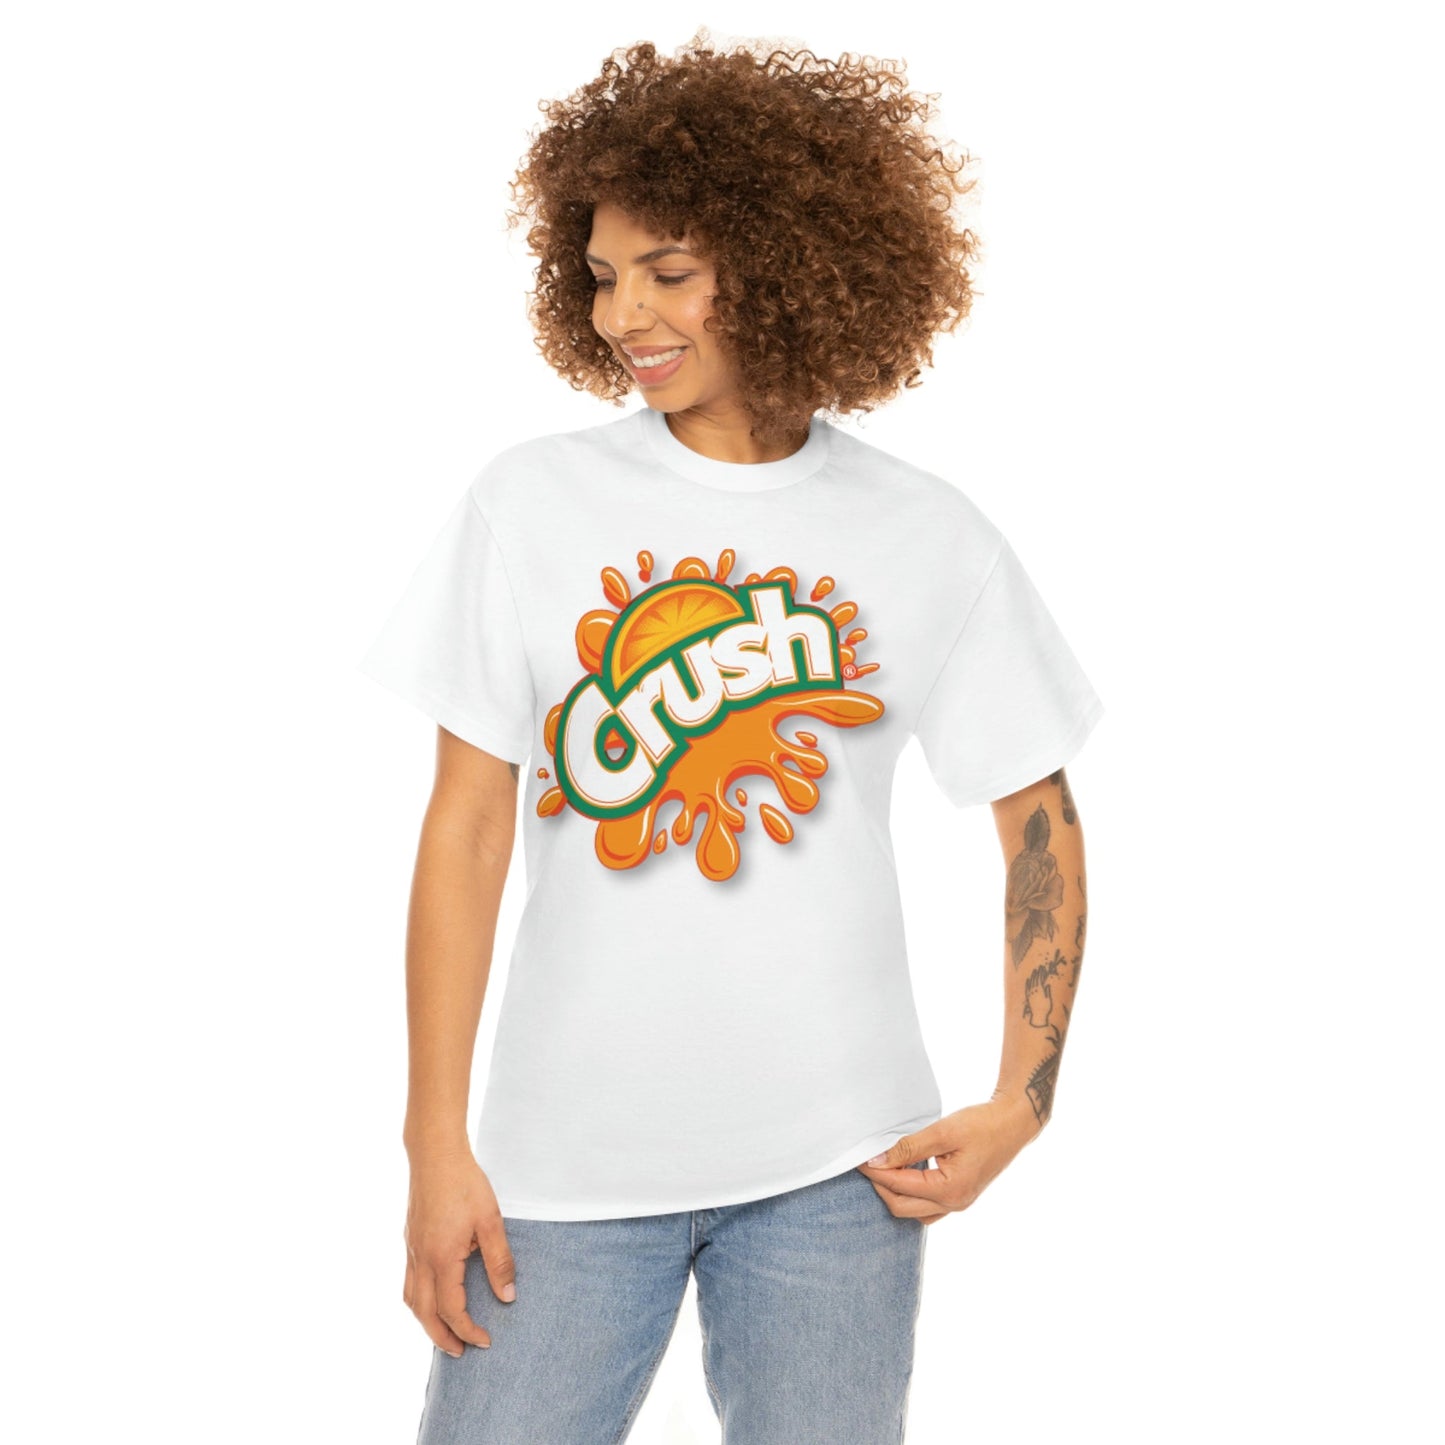 Orange Crush T-Shirt - RetroTeeShop